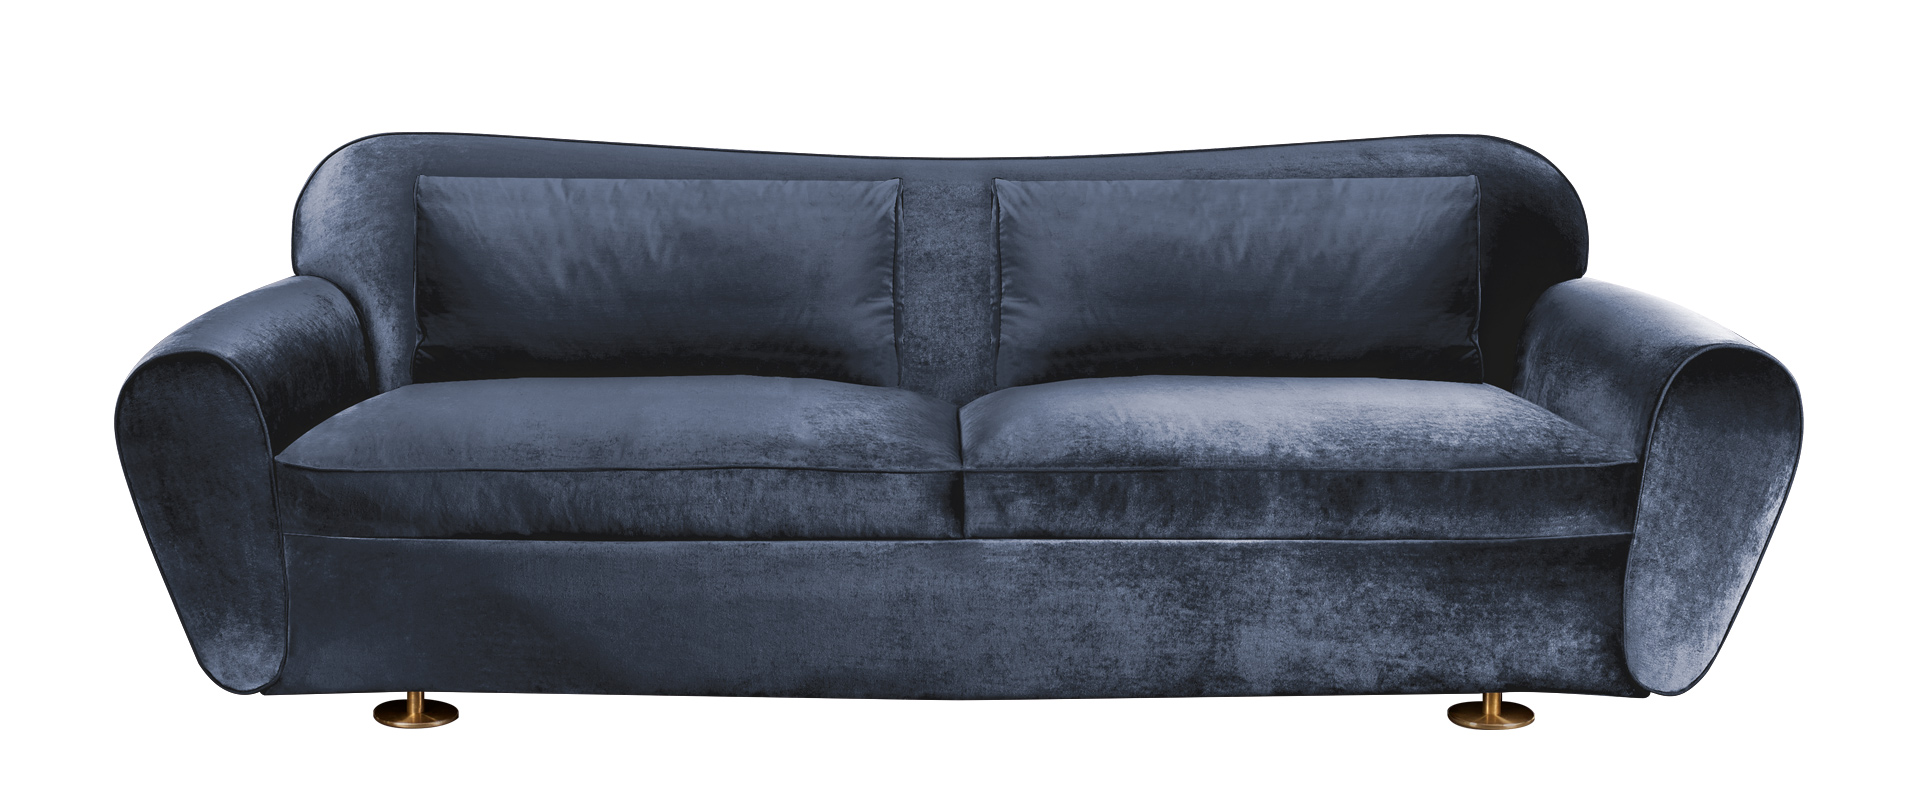 Artù est un canapé revêtu de tissu avec des pieds en bronze. Ce meuble figure dans le catalogue Promemoria | Promemoria